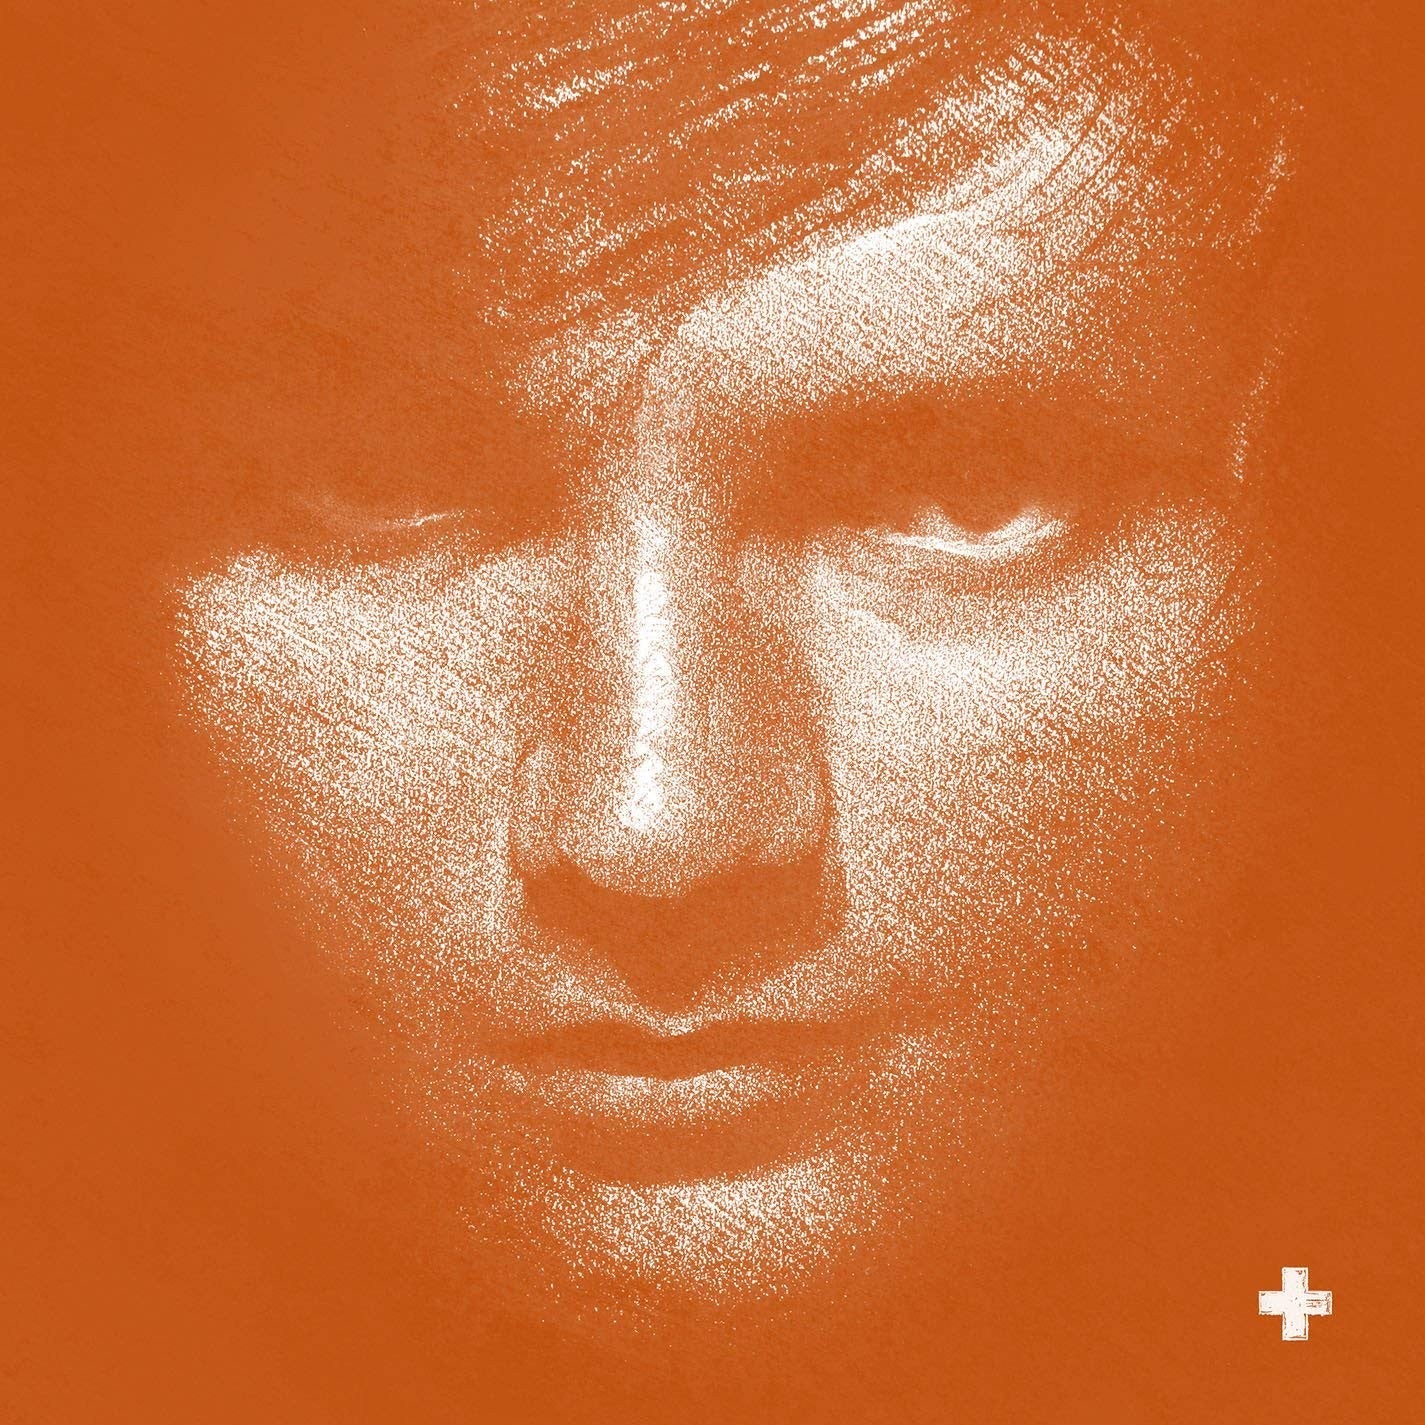 Ed Sheeran / Plus Sign